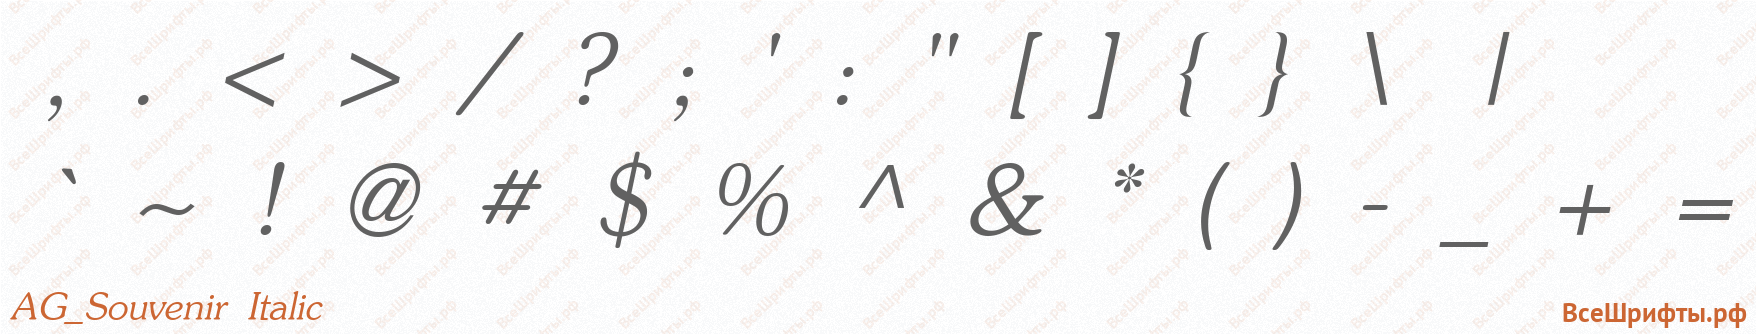 Шрифт AG_Souvenir Italic со знаками препинания и пунктуации